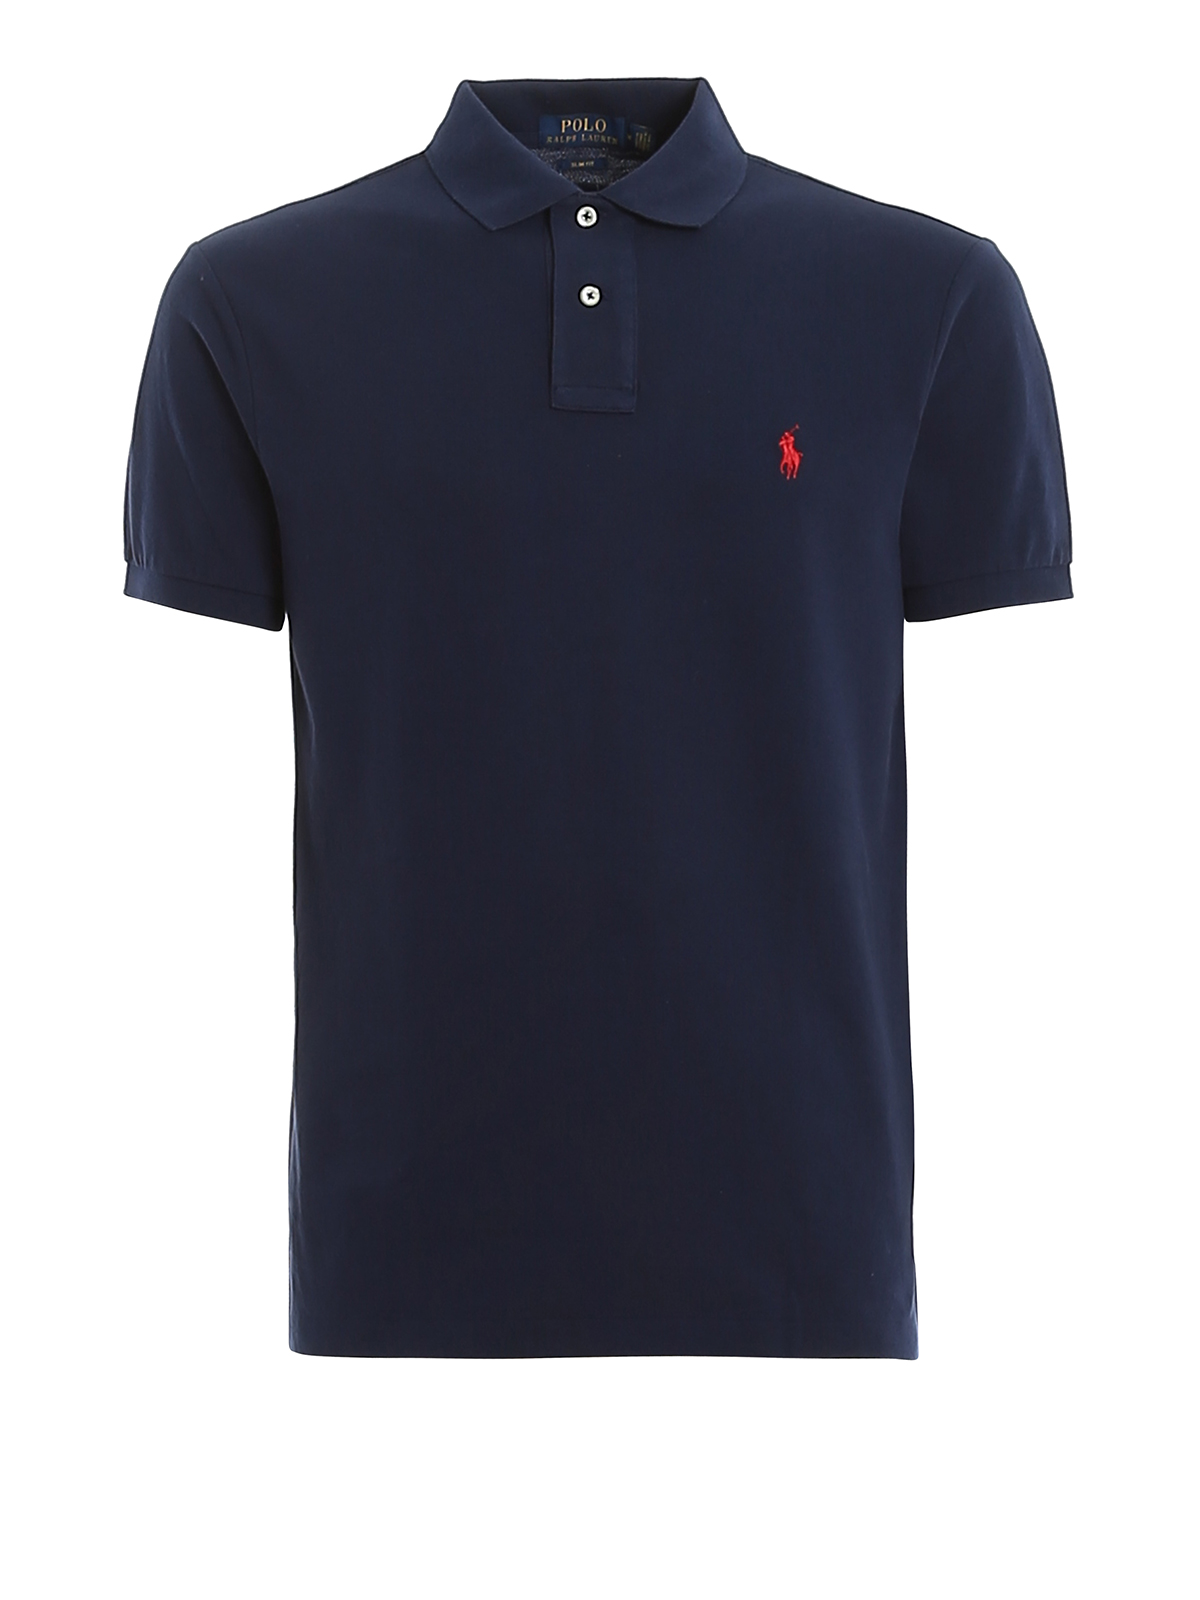 Black Ralph Lauren Polo Shirt Outlet Deals, Save 41% | jlcatj.gob.mx